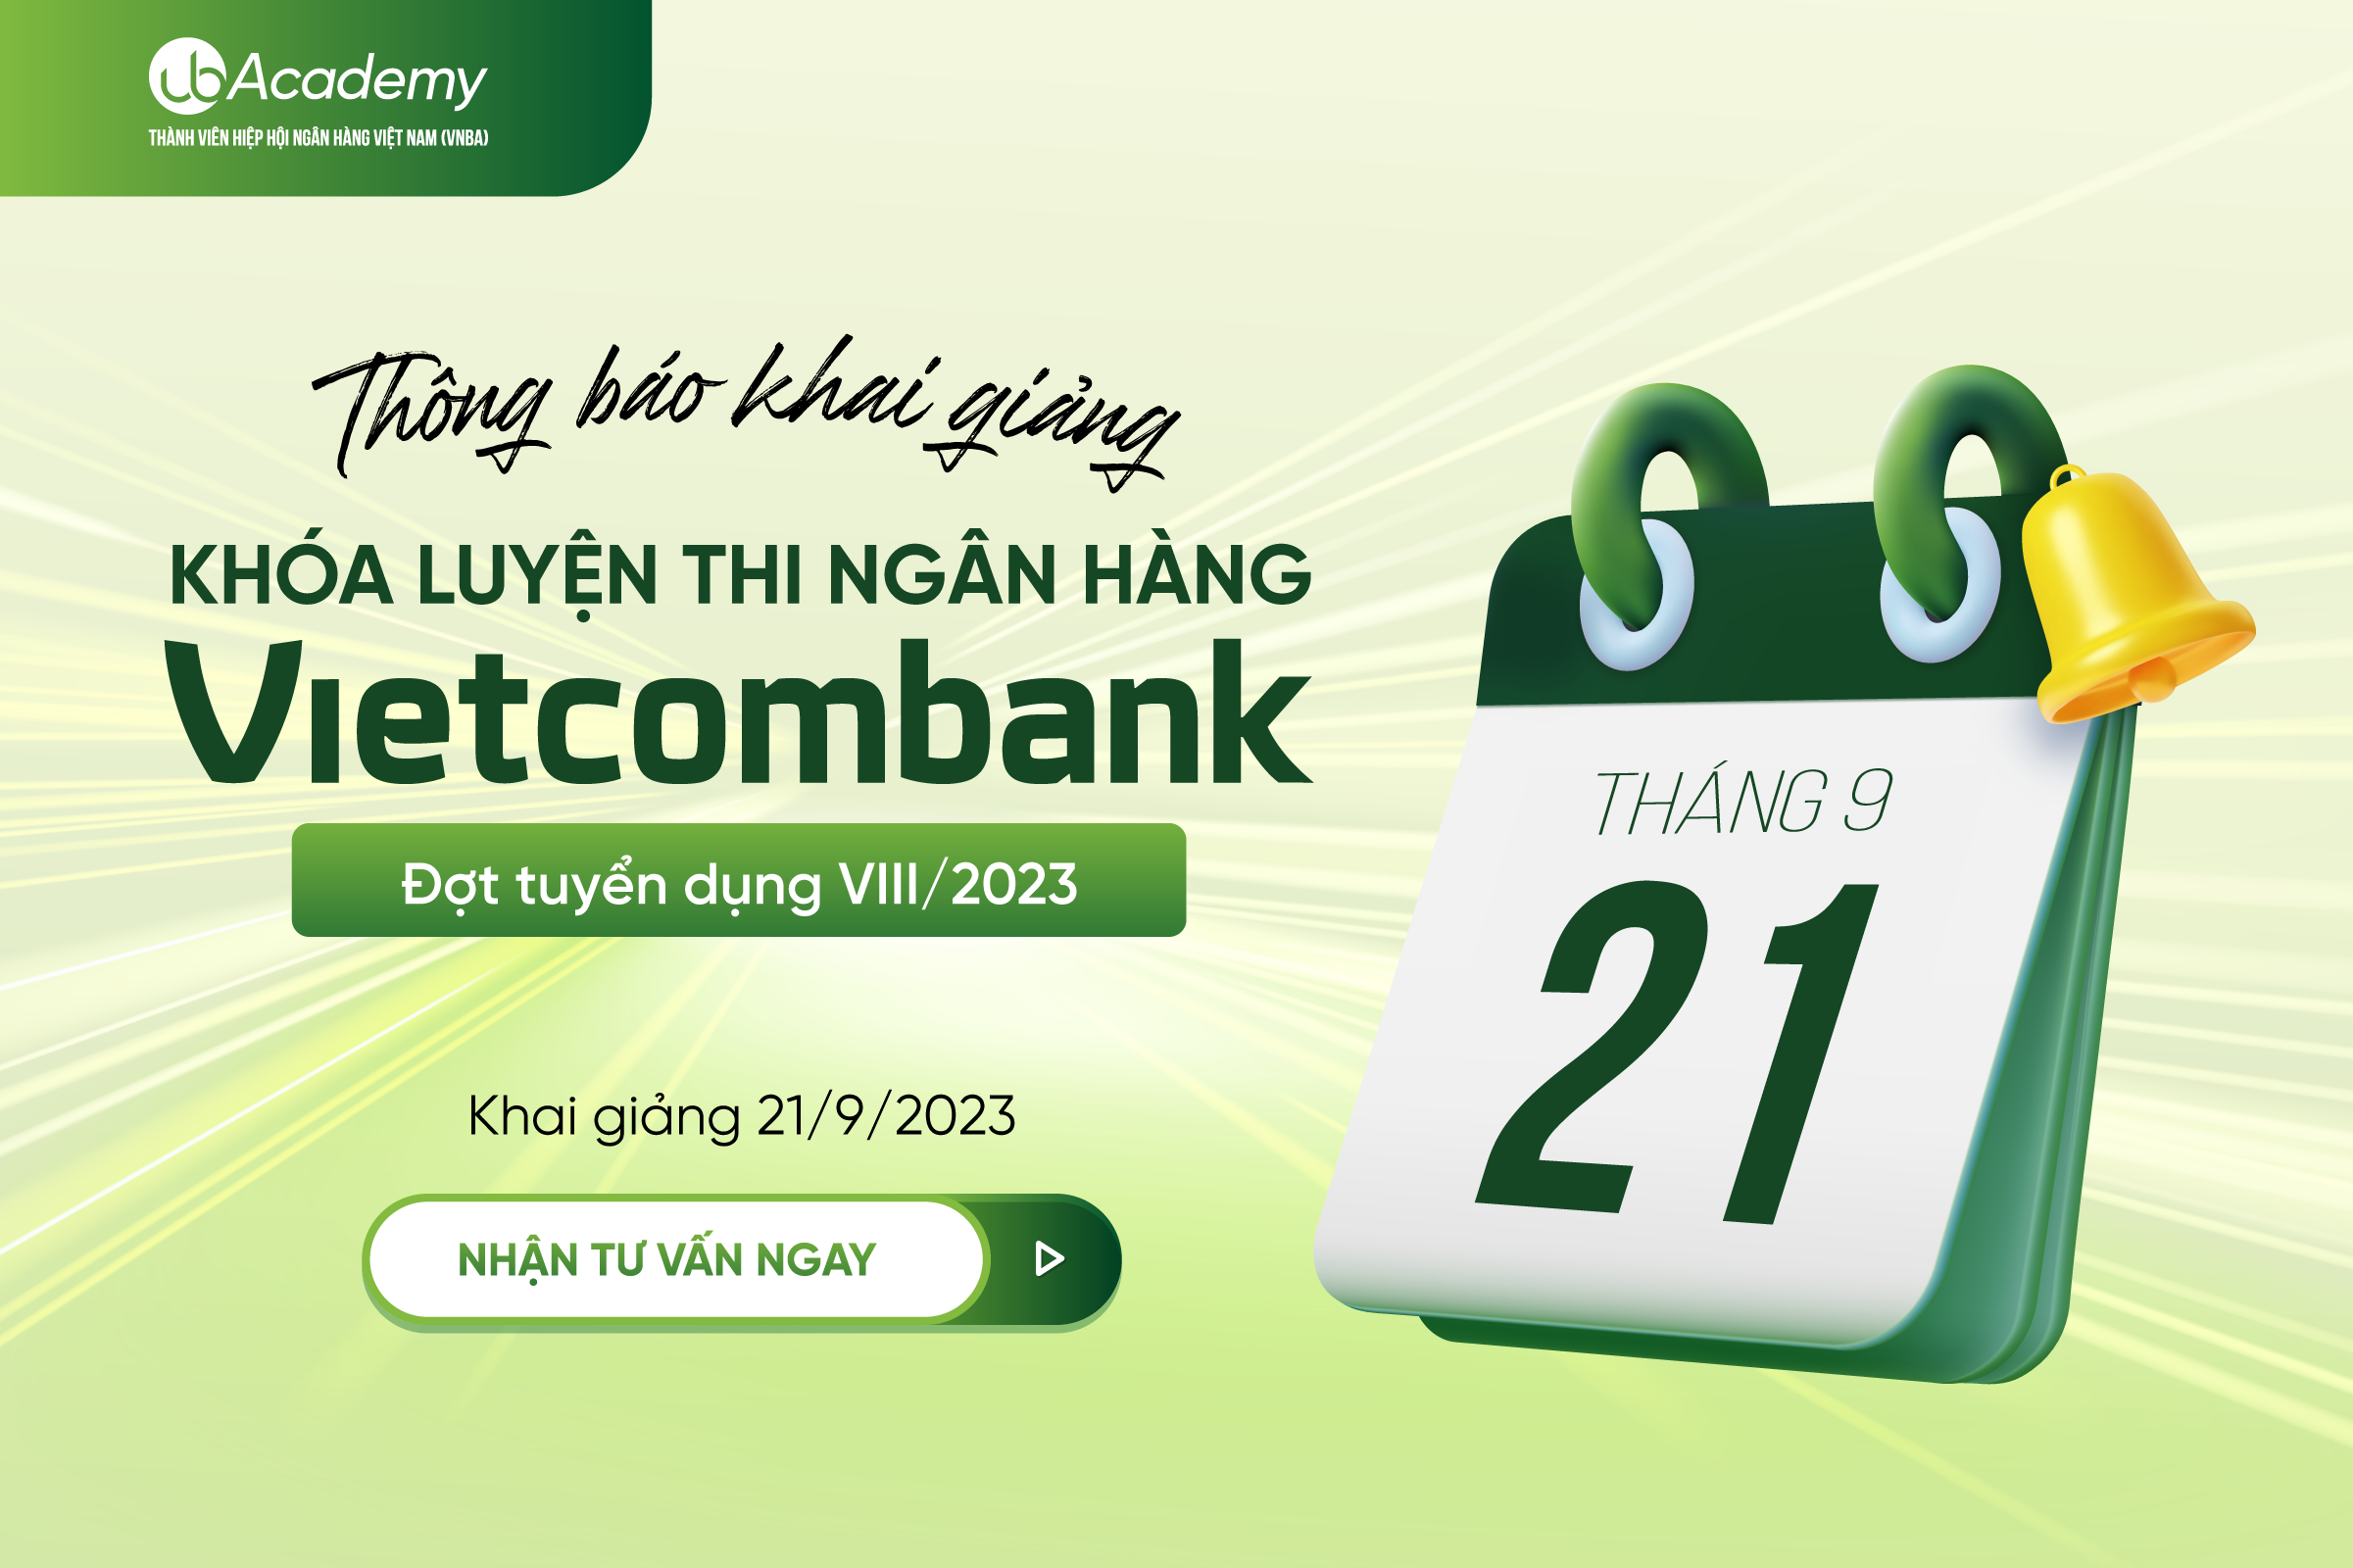 Thông báo Khai giảng Khóa học luyện thi Ngân hàng Vietcombank 2023